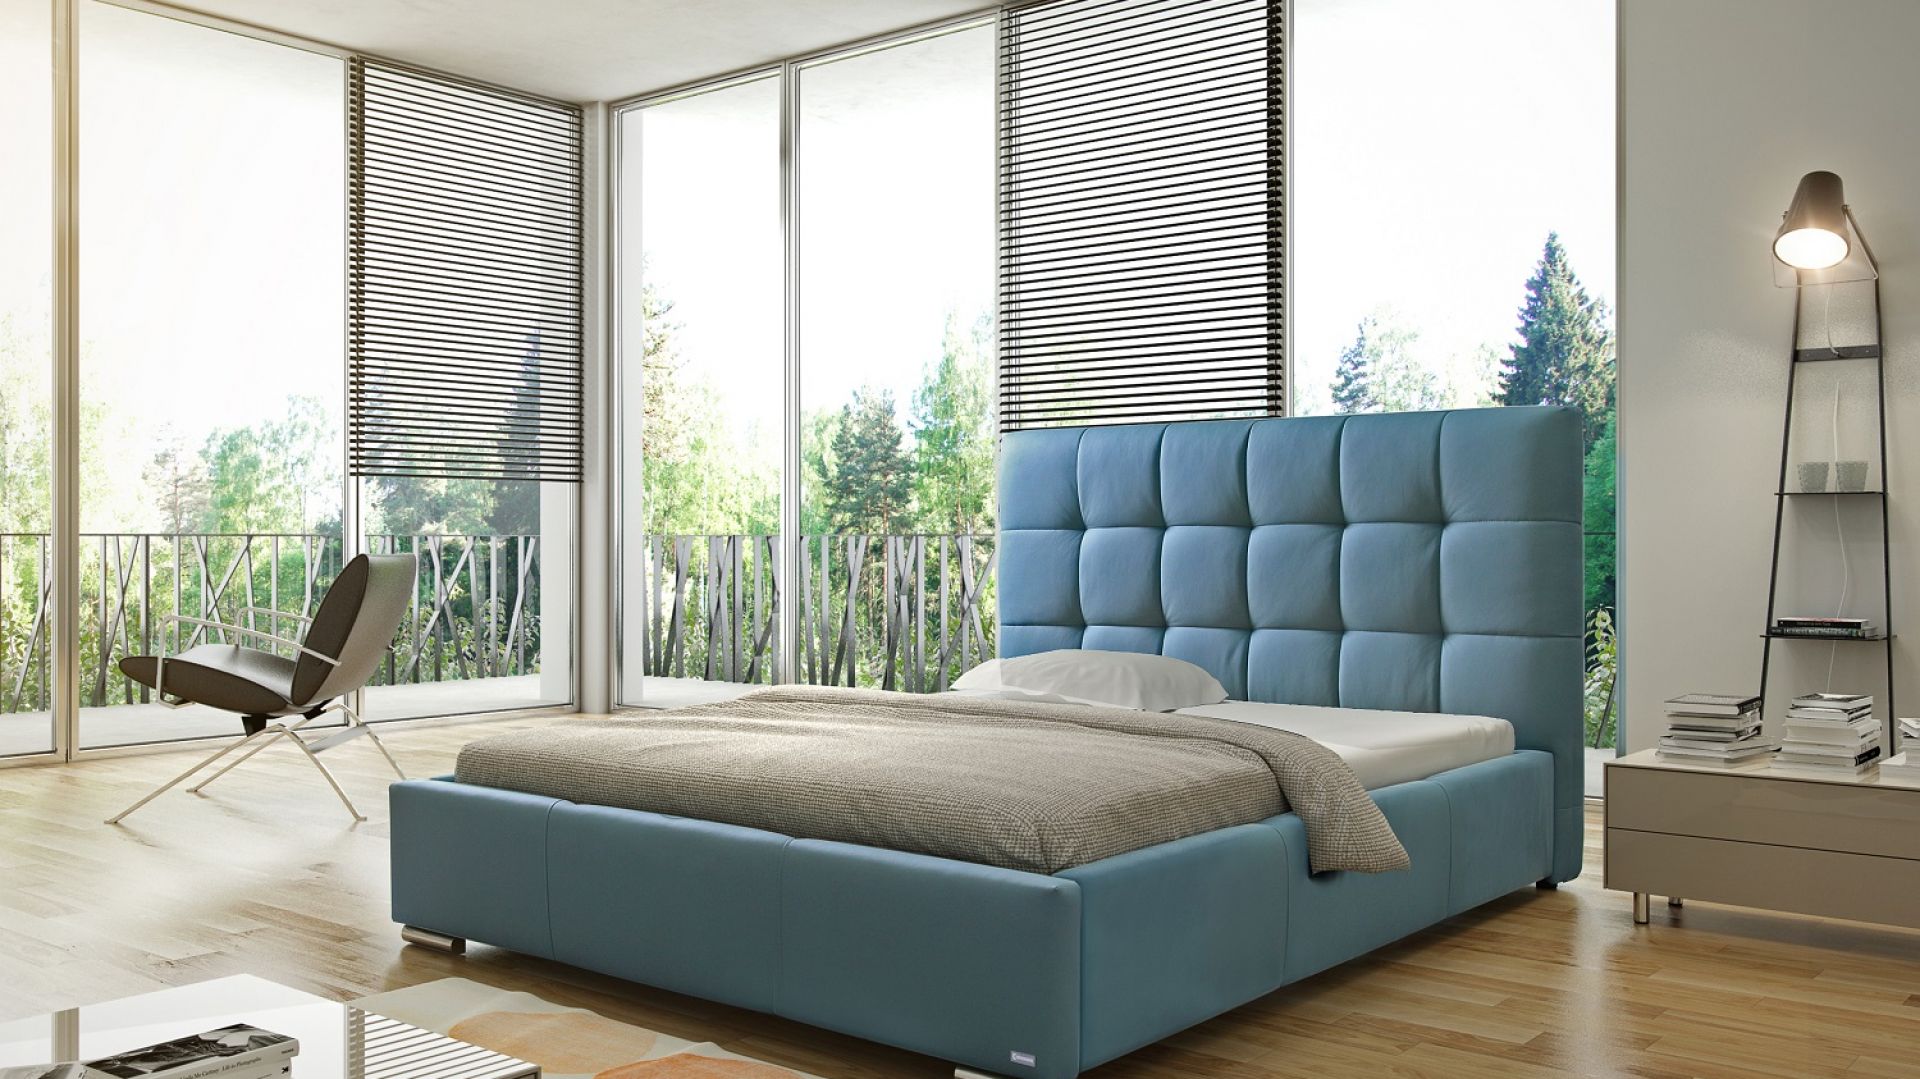 Sypialnia w chłodnych kolorach - wybór nie tylko dla minimalistów